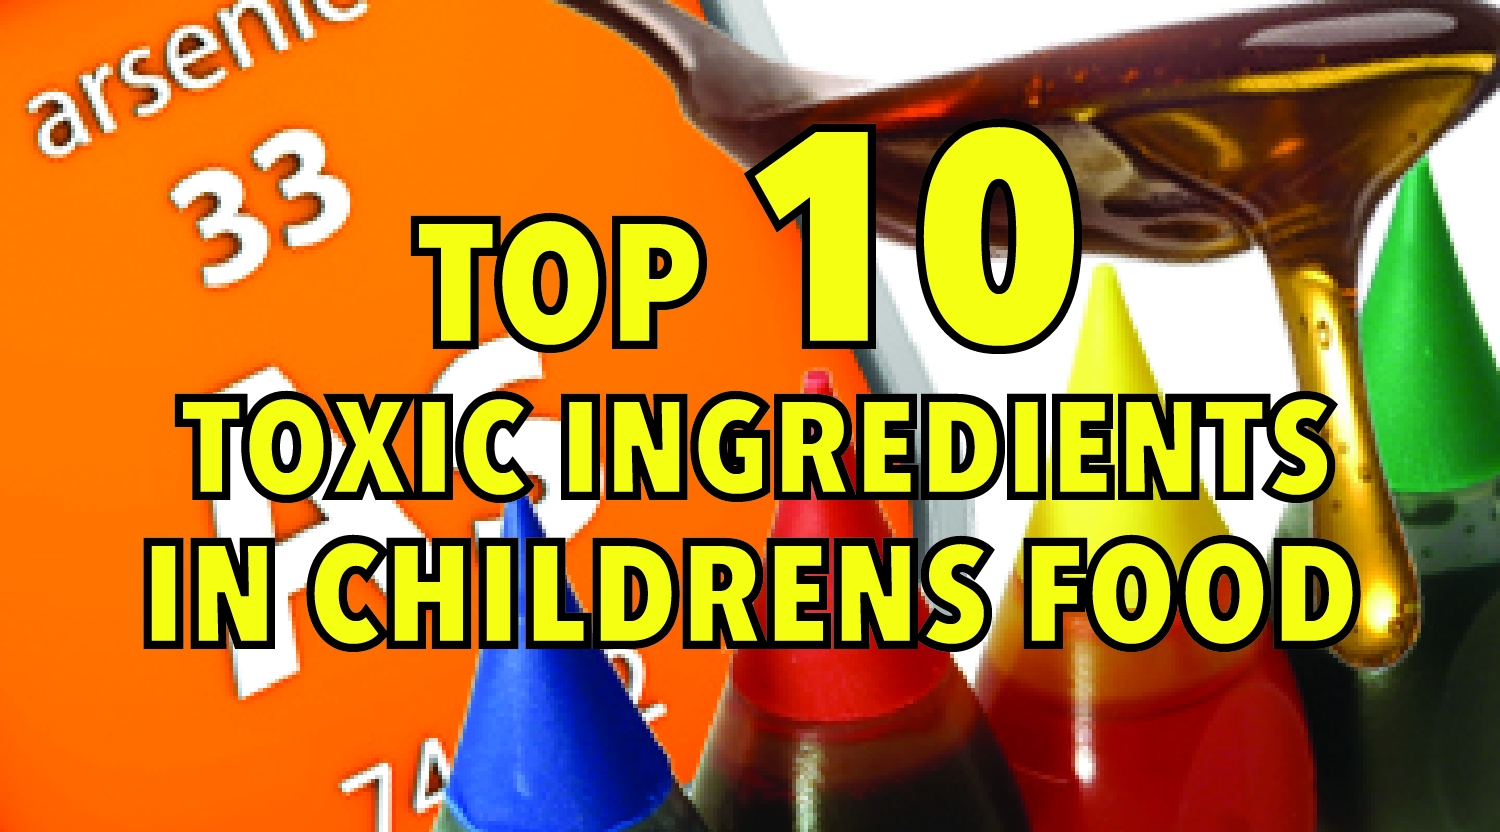 Top 10 toxic ingredients in children's food